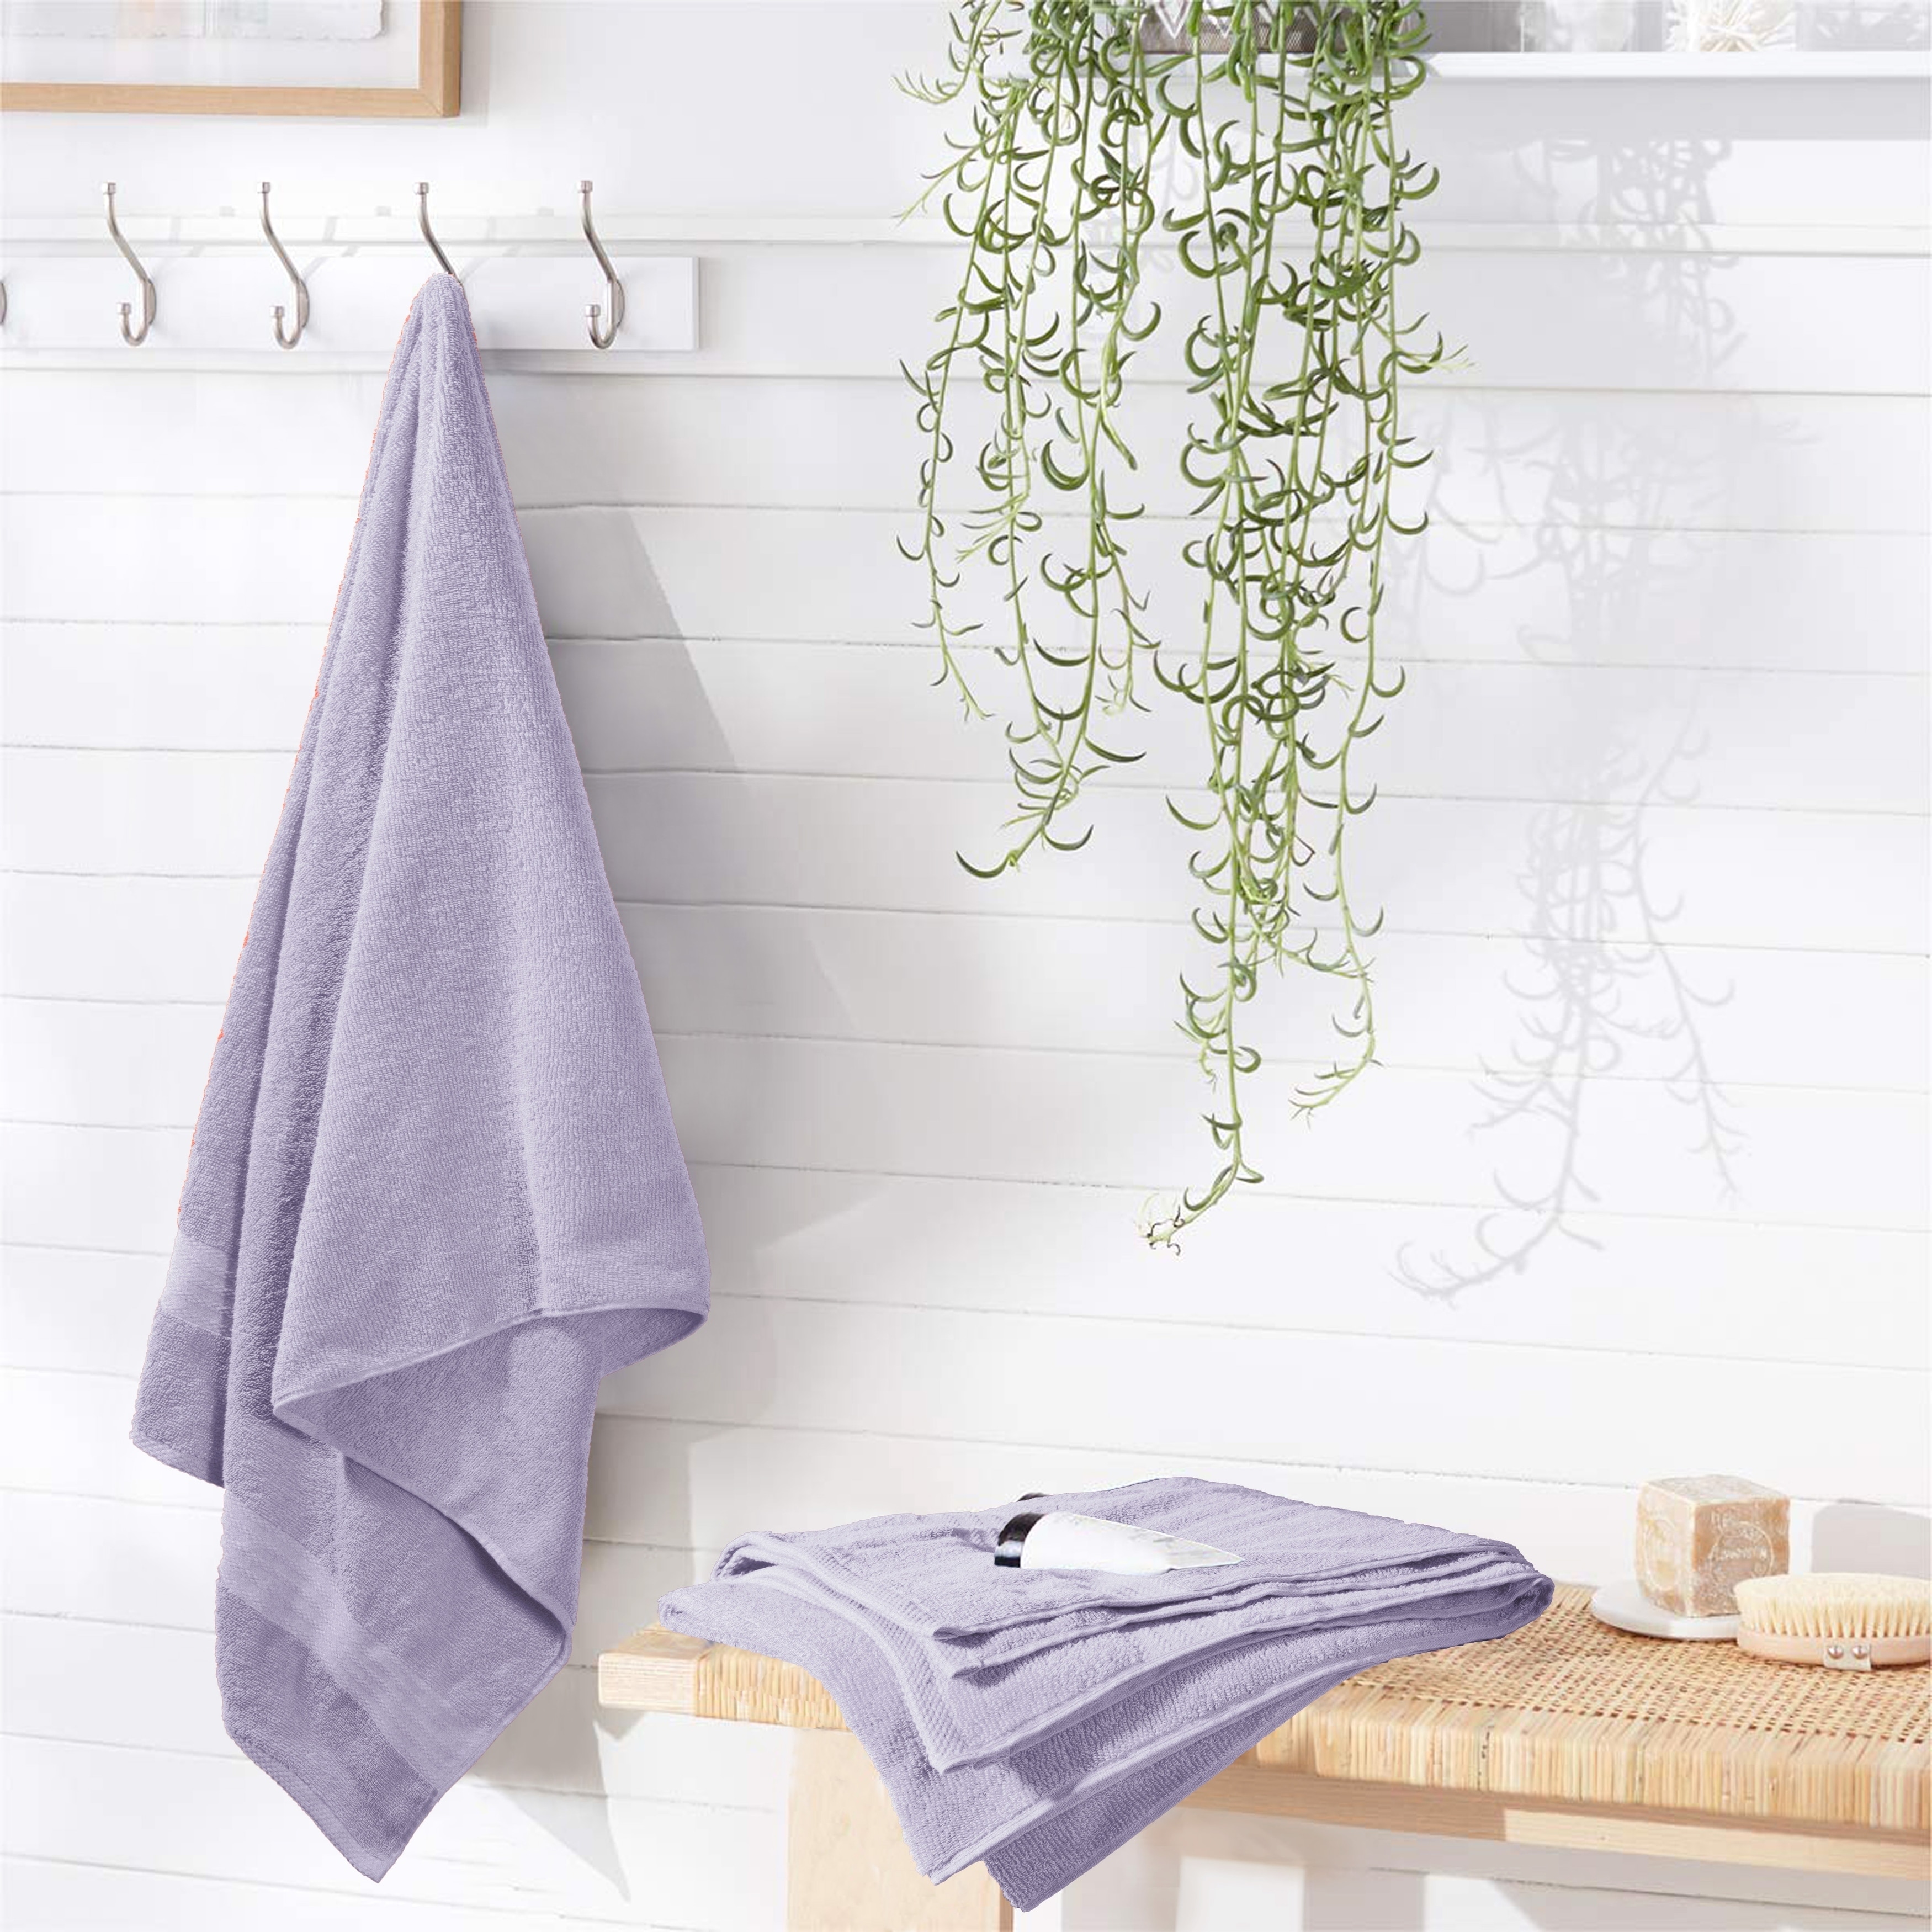 4 Piece Bath Towel Set, 100% Cotton, High Absorbent Quick Dry Bath Towels, Machine Washable, 27x54 MoNiBloom Color: Gray